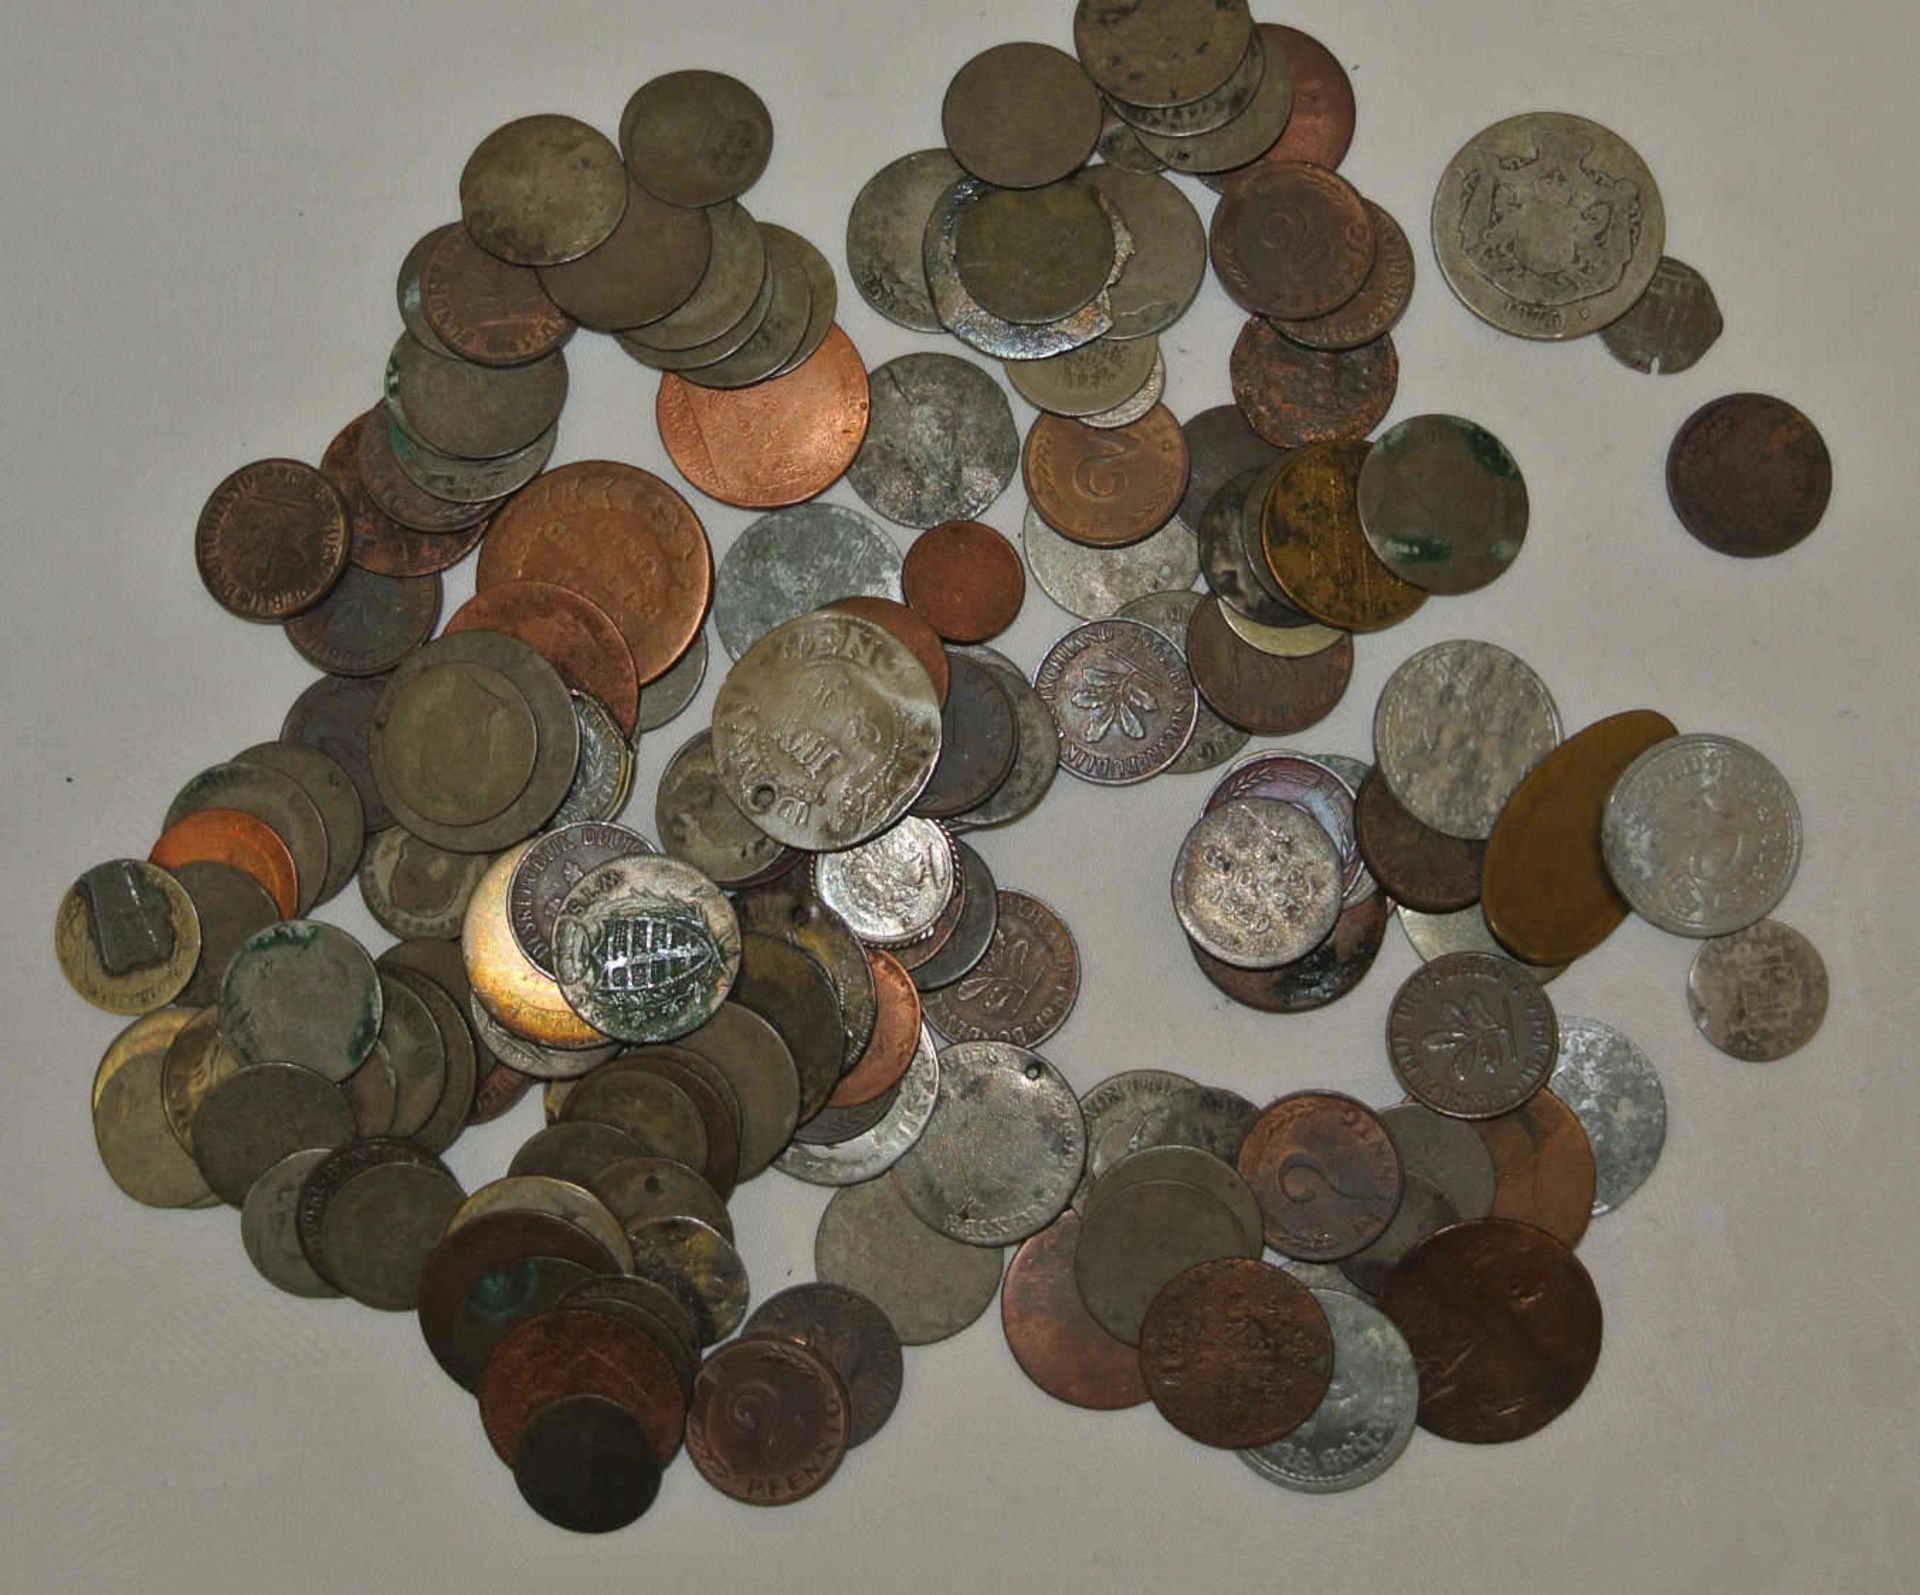 Kleines Lot alte Münzen, meist um 1800-1900, stark berieben, dabei auch etwas Silber. Small lot